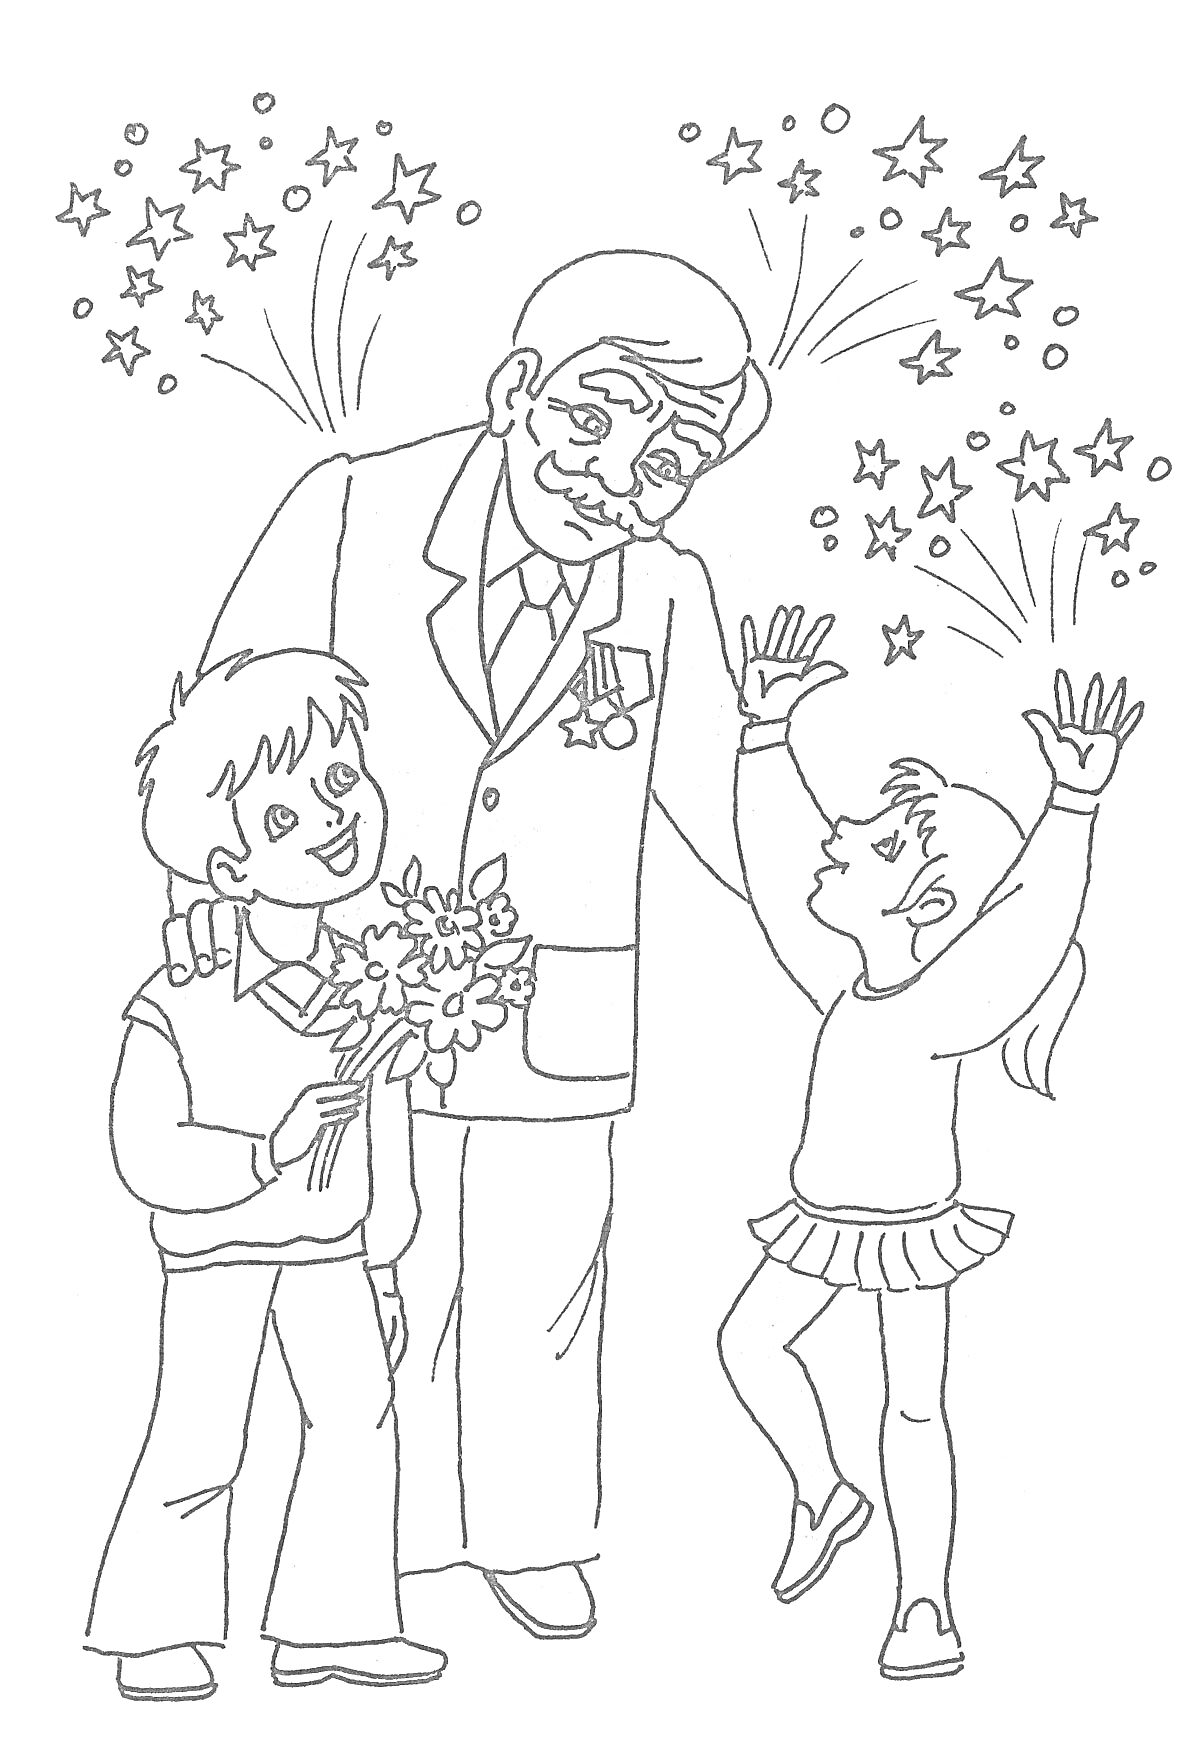 Раскраска День Победы, дедушка в военной форме с медалями, дедушка держит руку на плече мальчика с букетом цветов, девочка поднимает руки вверх, салют